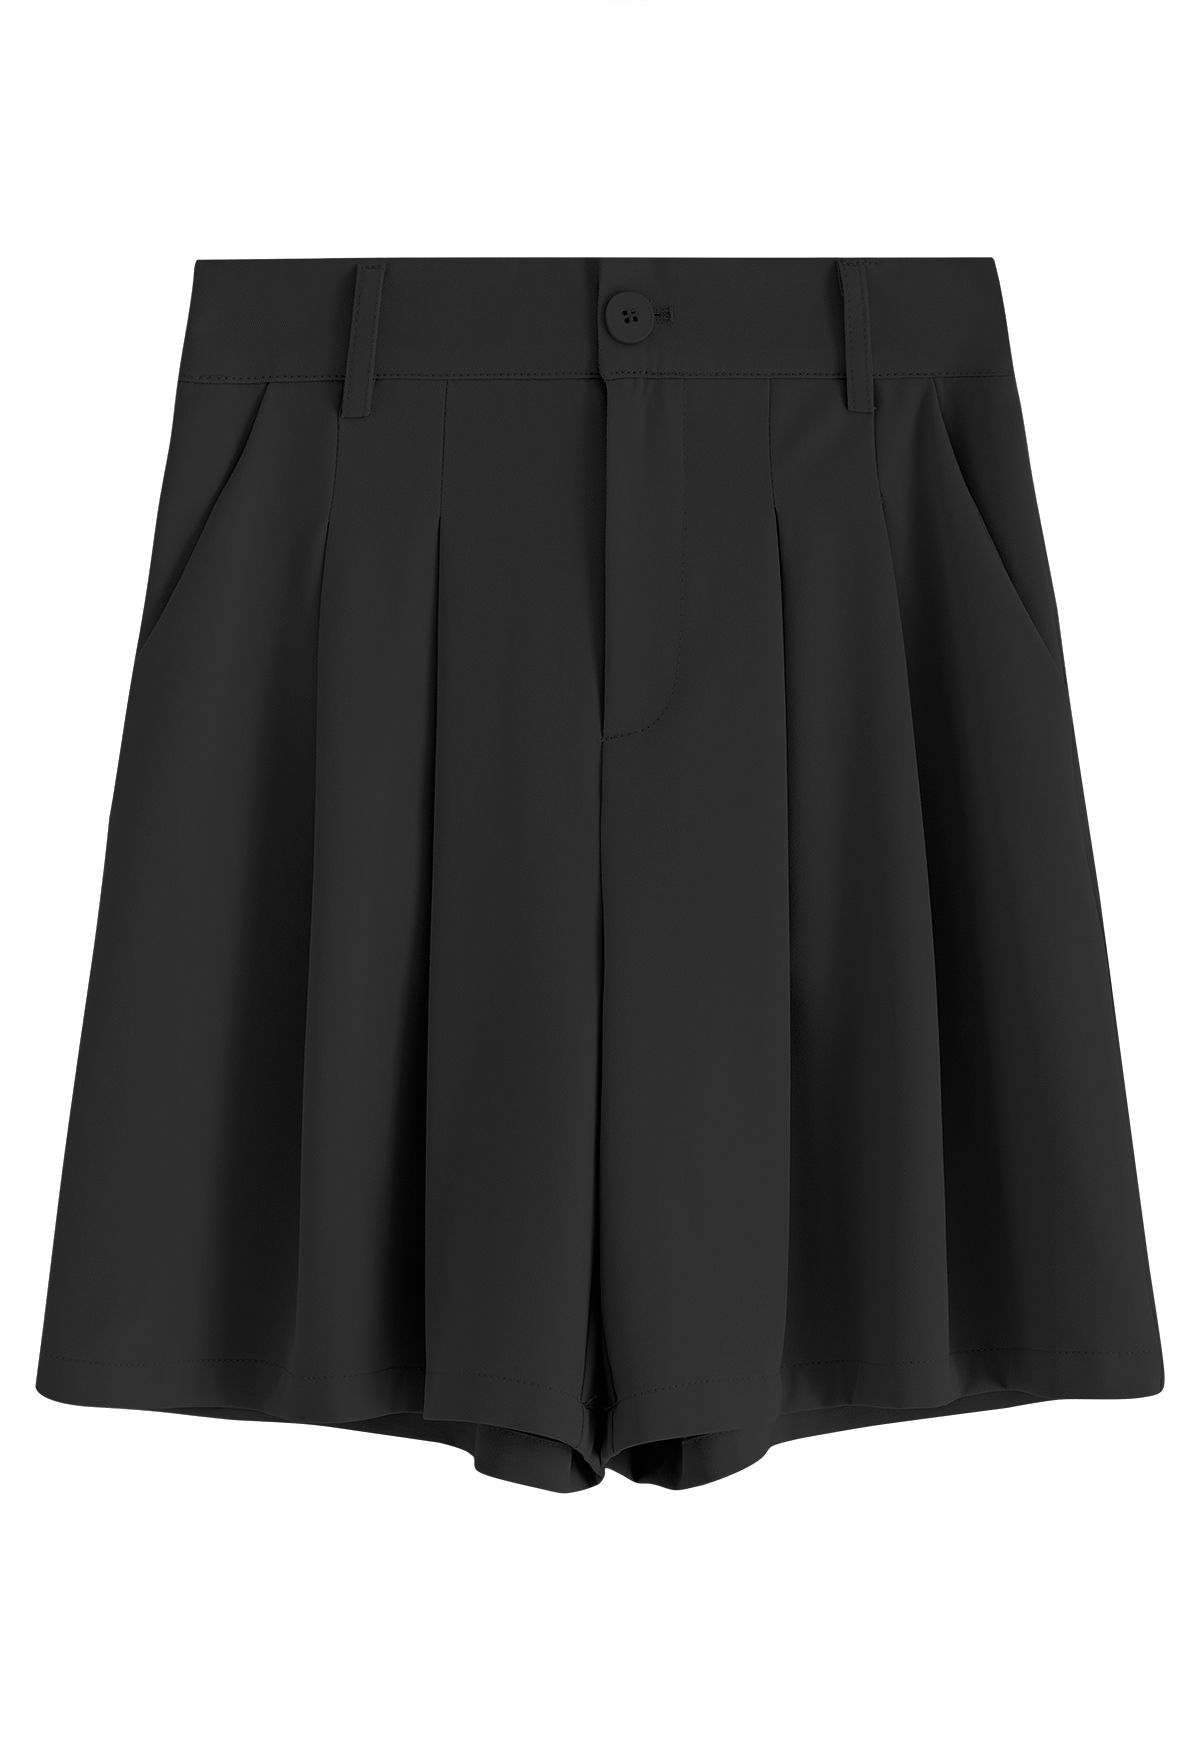 Shorts con bolsillos laterales con detalle plisado en negro